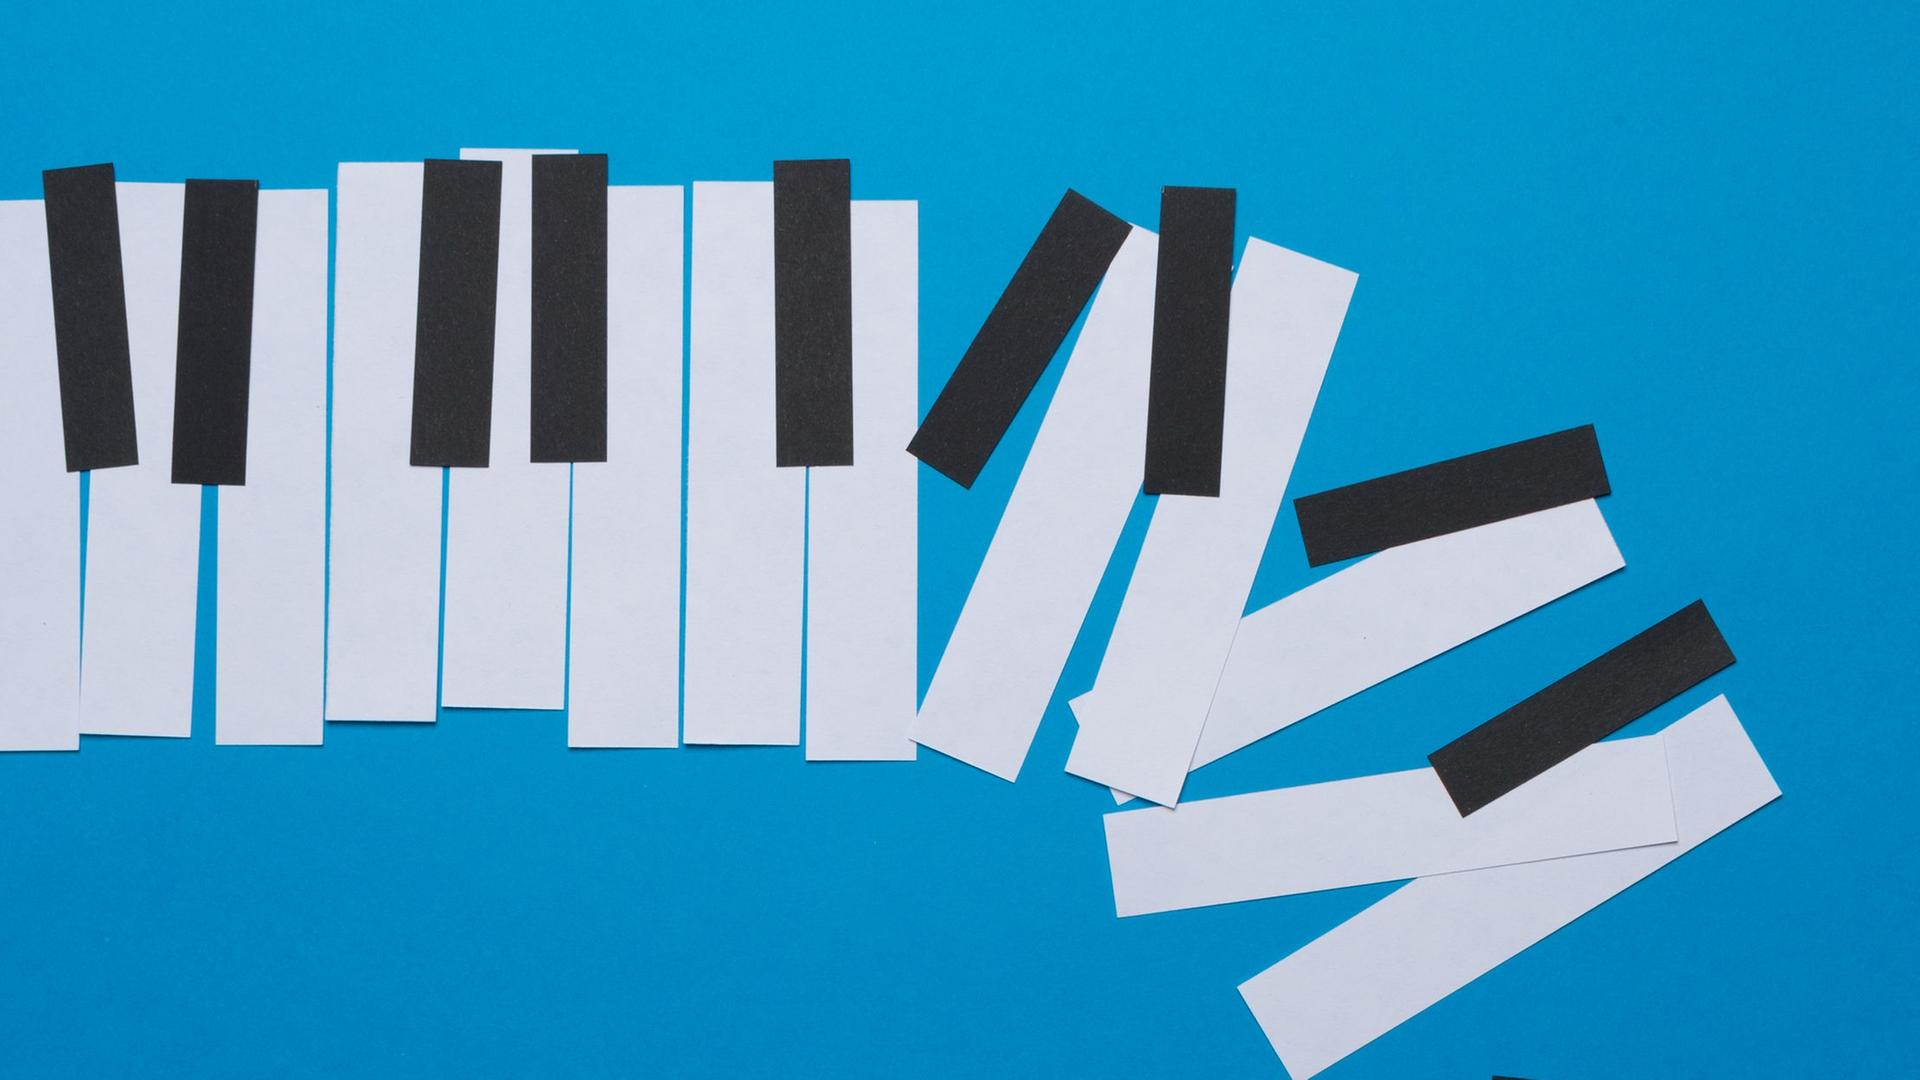 Papiercollage von Klaviertasten die zum rechten Bildrand aus dem Raster springen